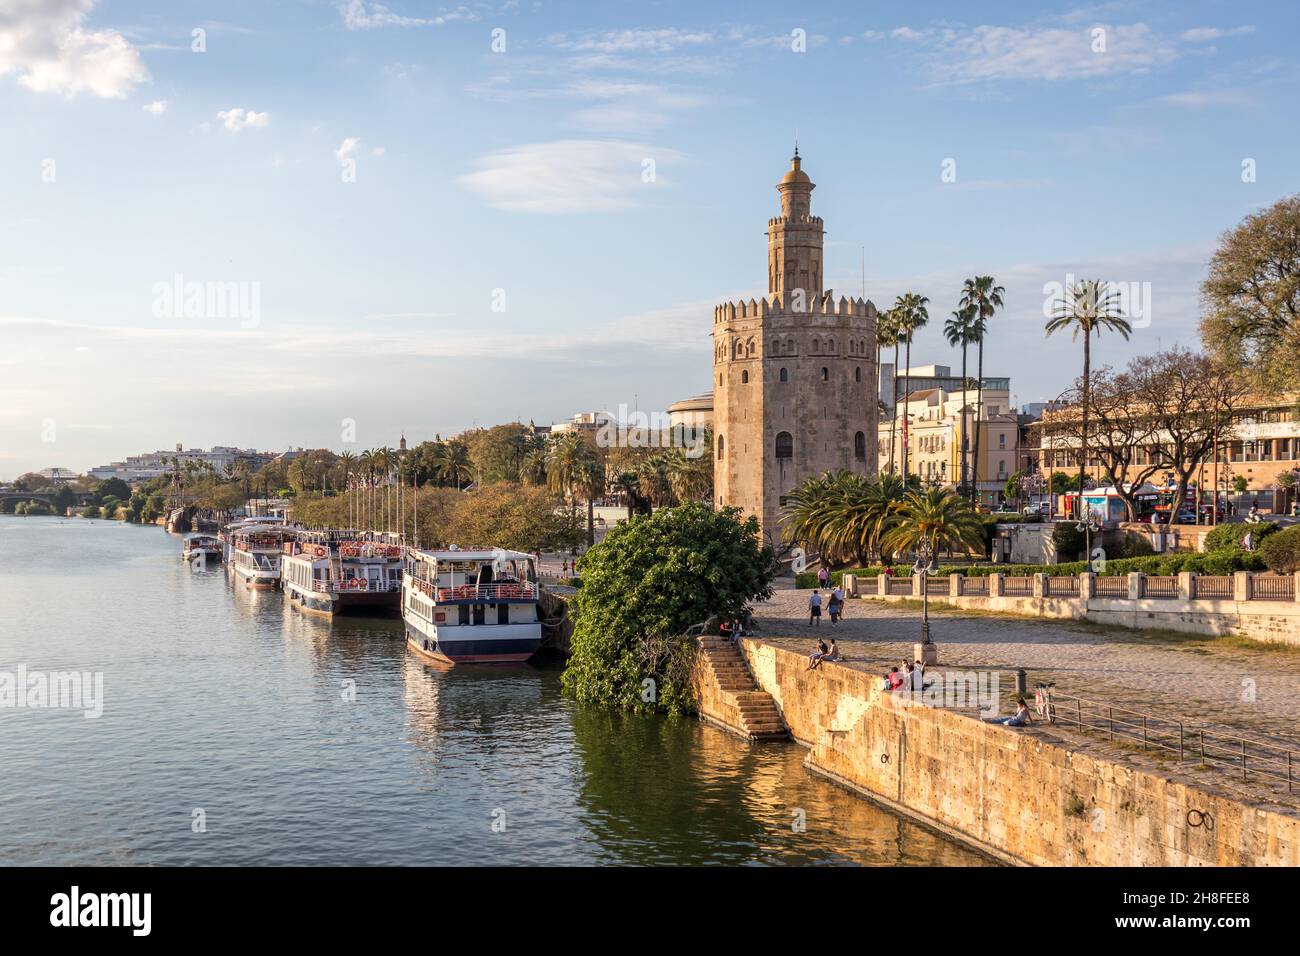 Vue sur le fleuve Guadalquivir et la Torre del Oro à Séville en Espagne.Carte postale typique de la ville. Banque D'Images